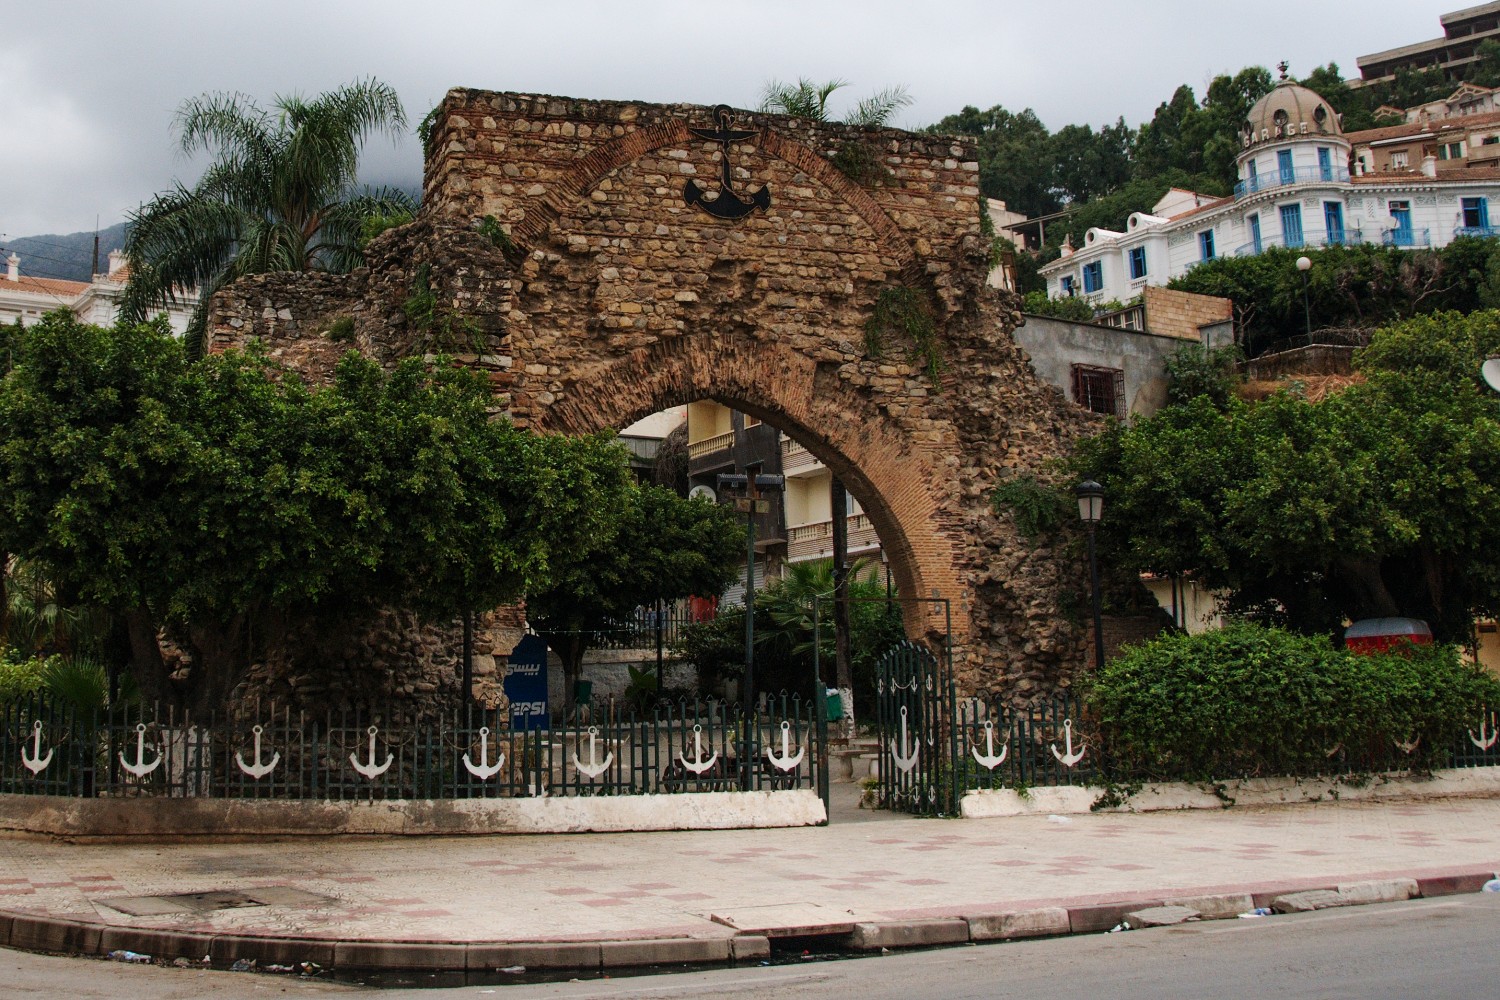 Bab al-Bahr